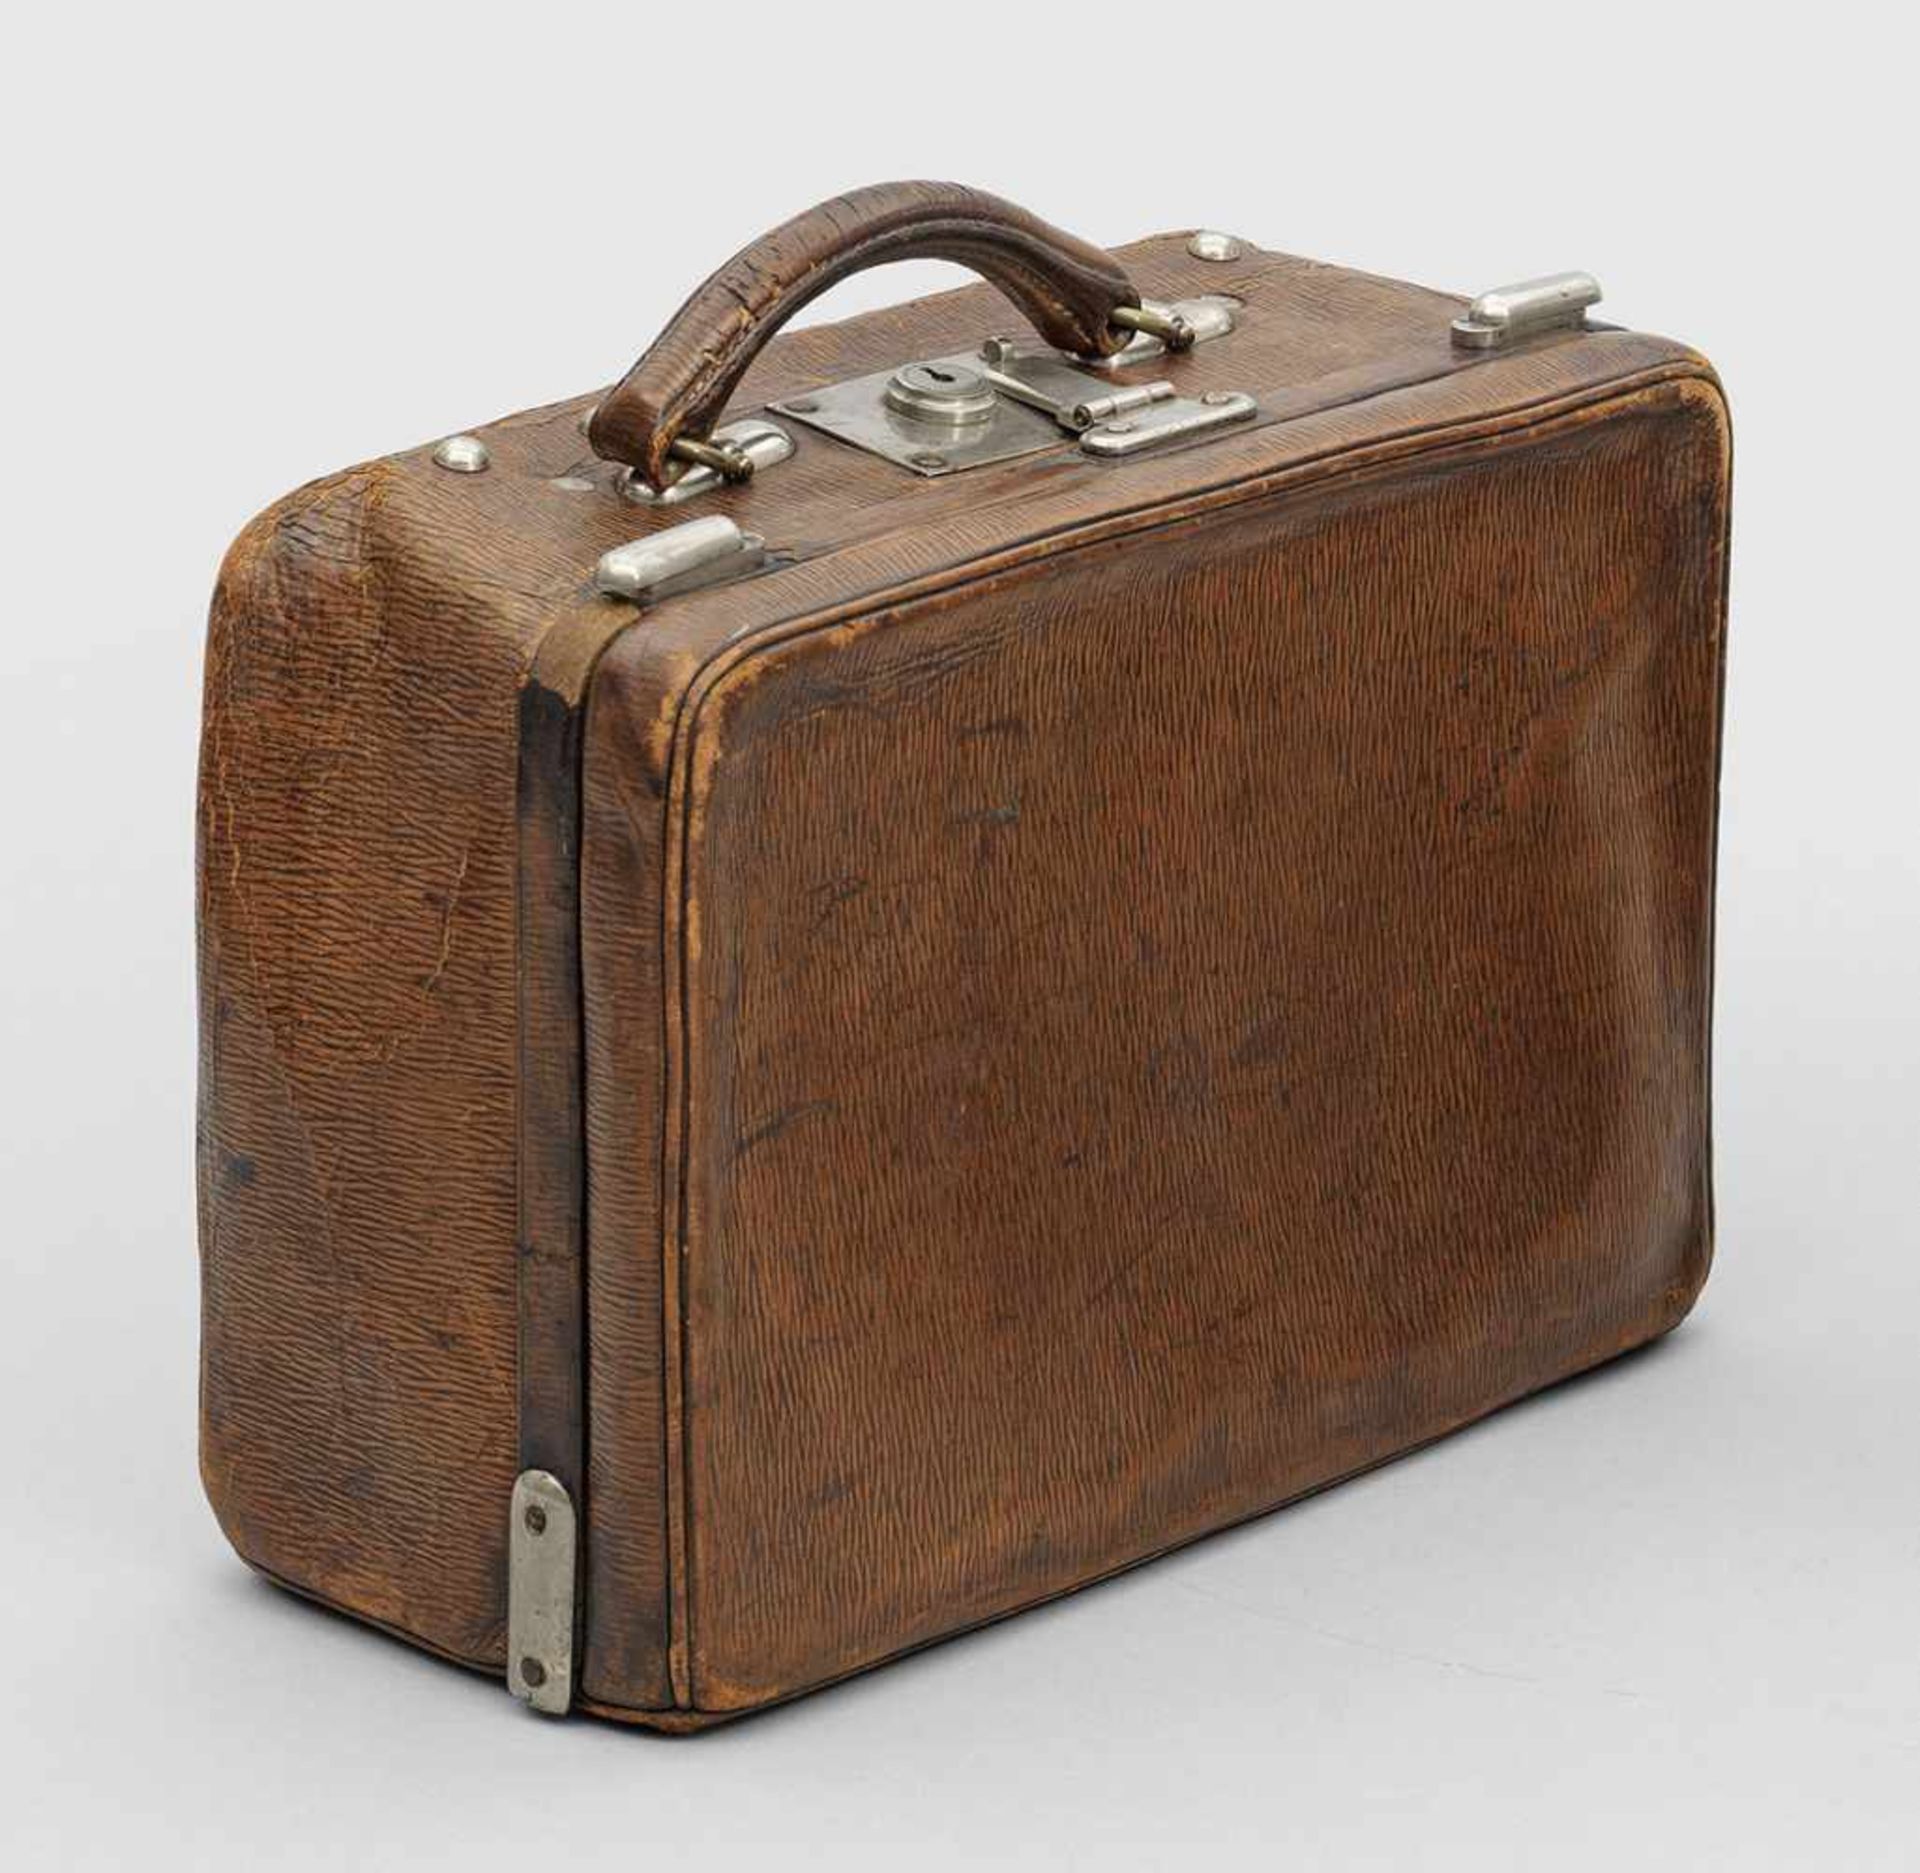 Kleiner Vintage-Koffer aus den 20er JahrenDunkelbraunes, geprägtes Leder, Hardware aus Chrom. Nahezu